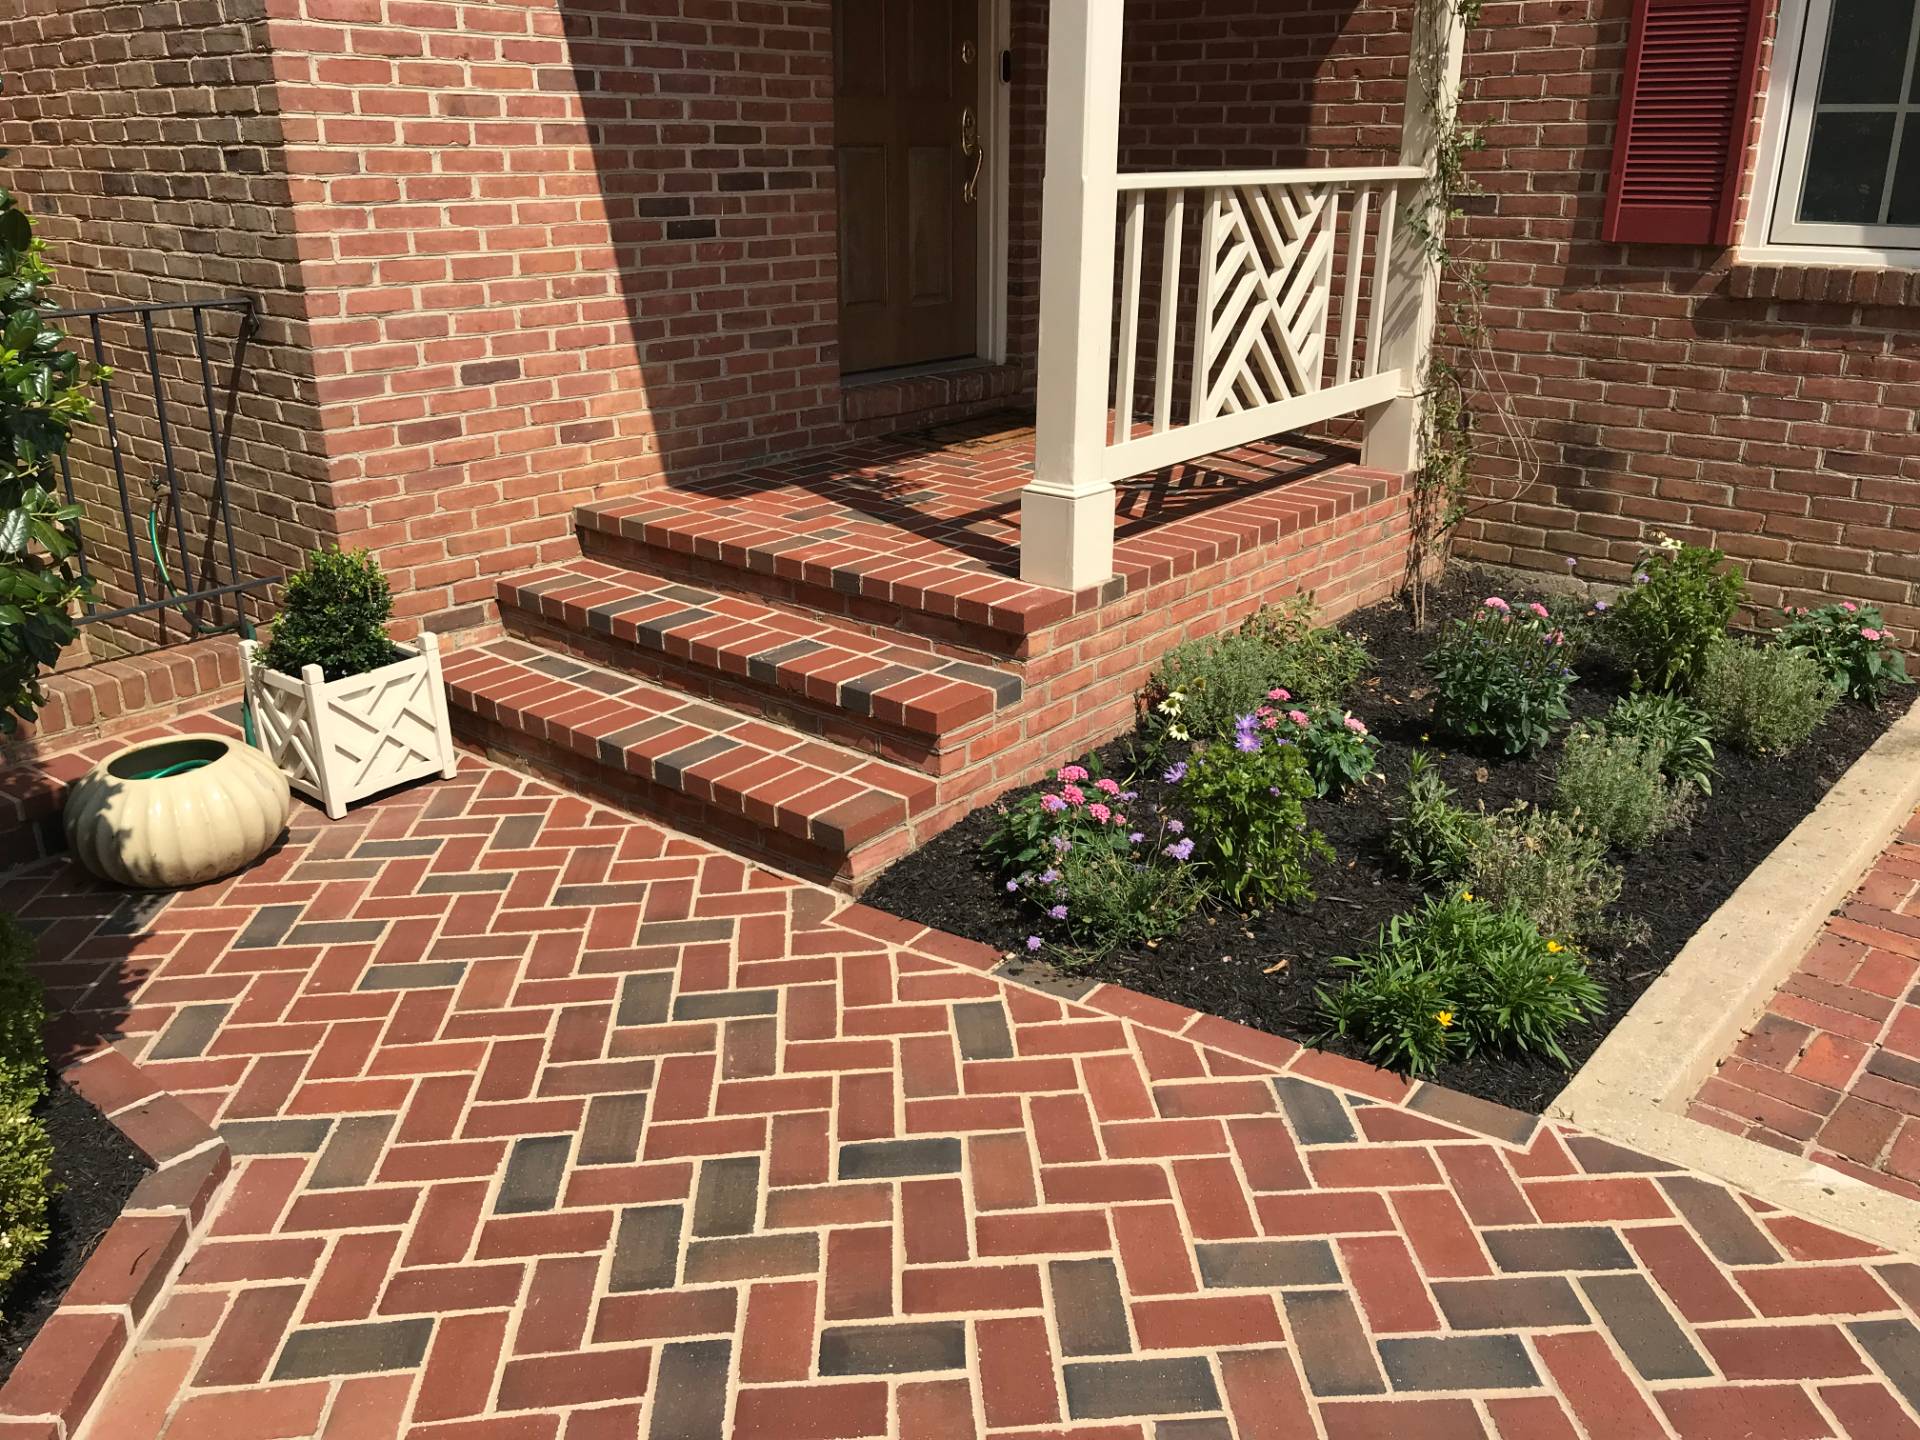 Image of Brick walk with patio area by Capital Masonry VA